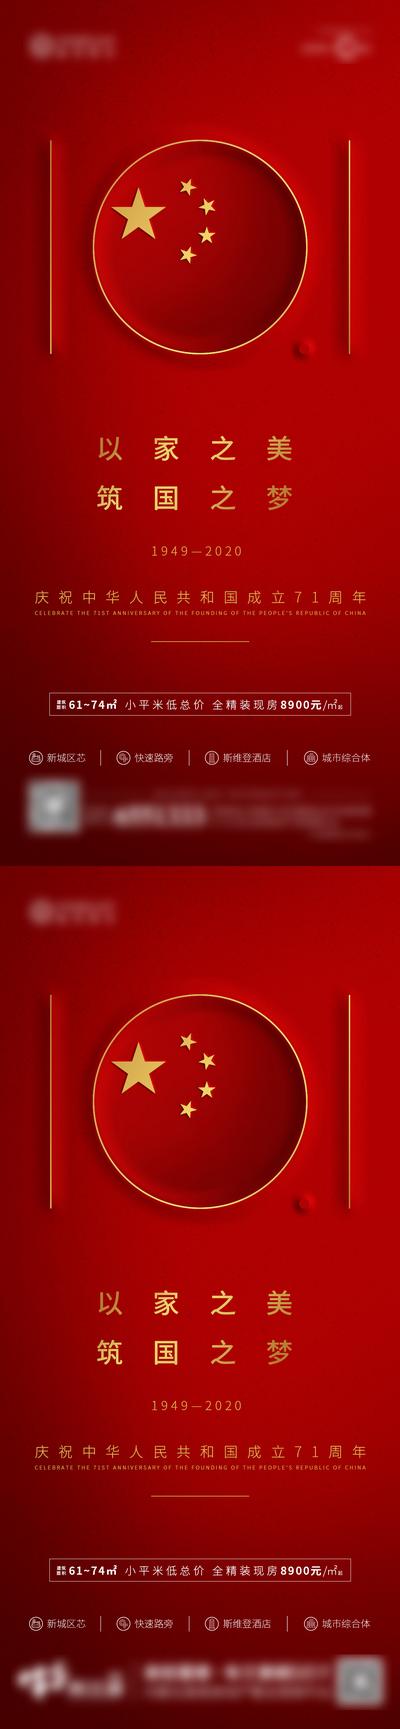 南门网 海报 房地产 系列 公历节日 国庆节